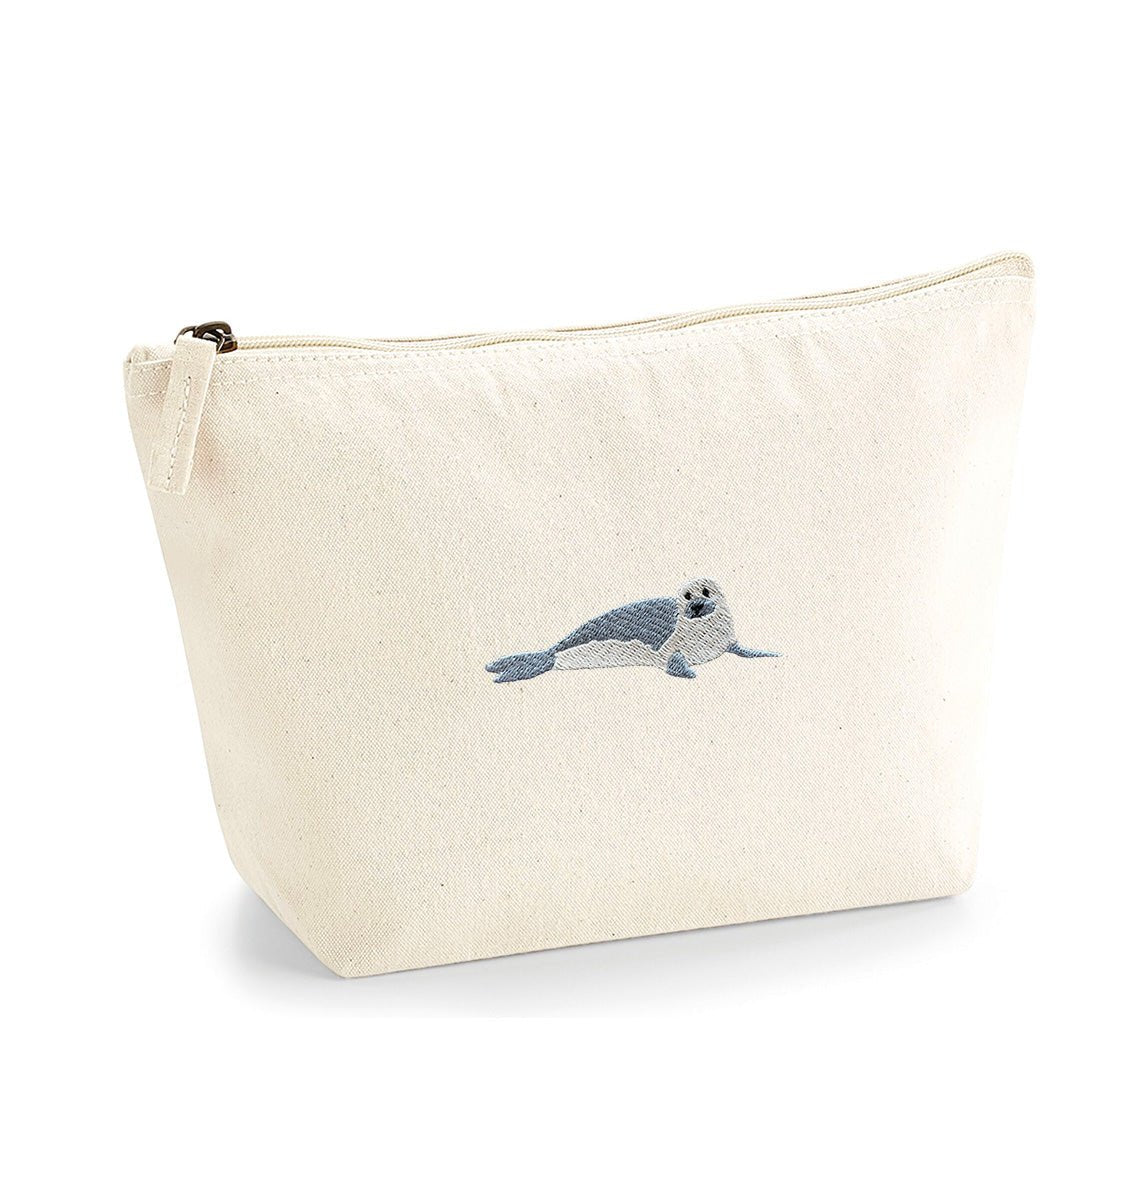 Seal Organic Accessory Bag - Blue Panda